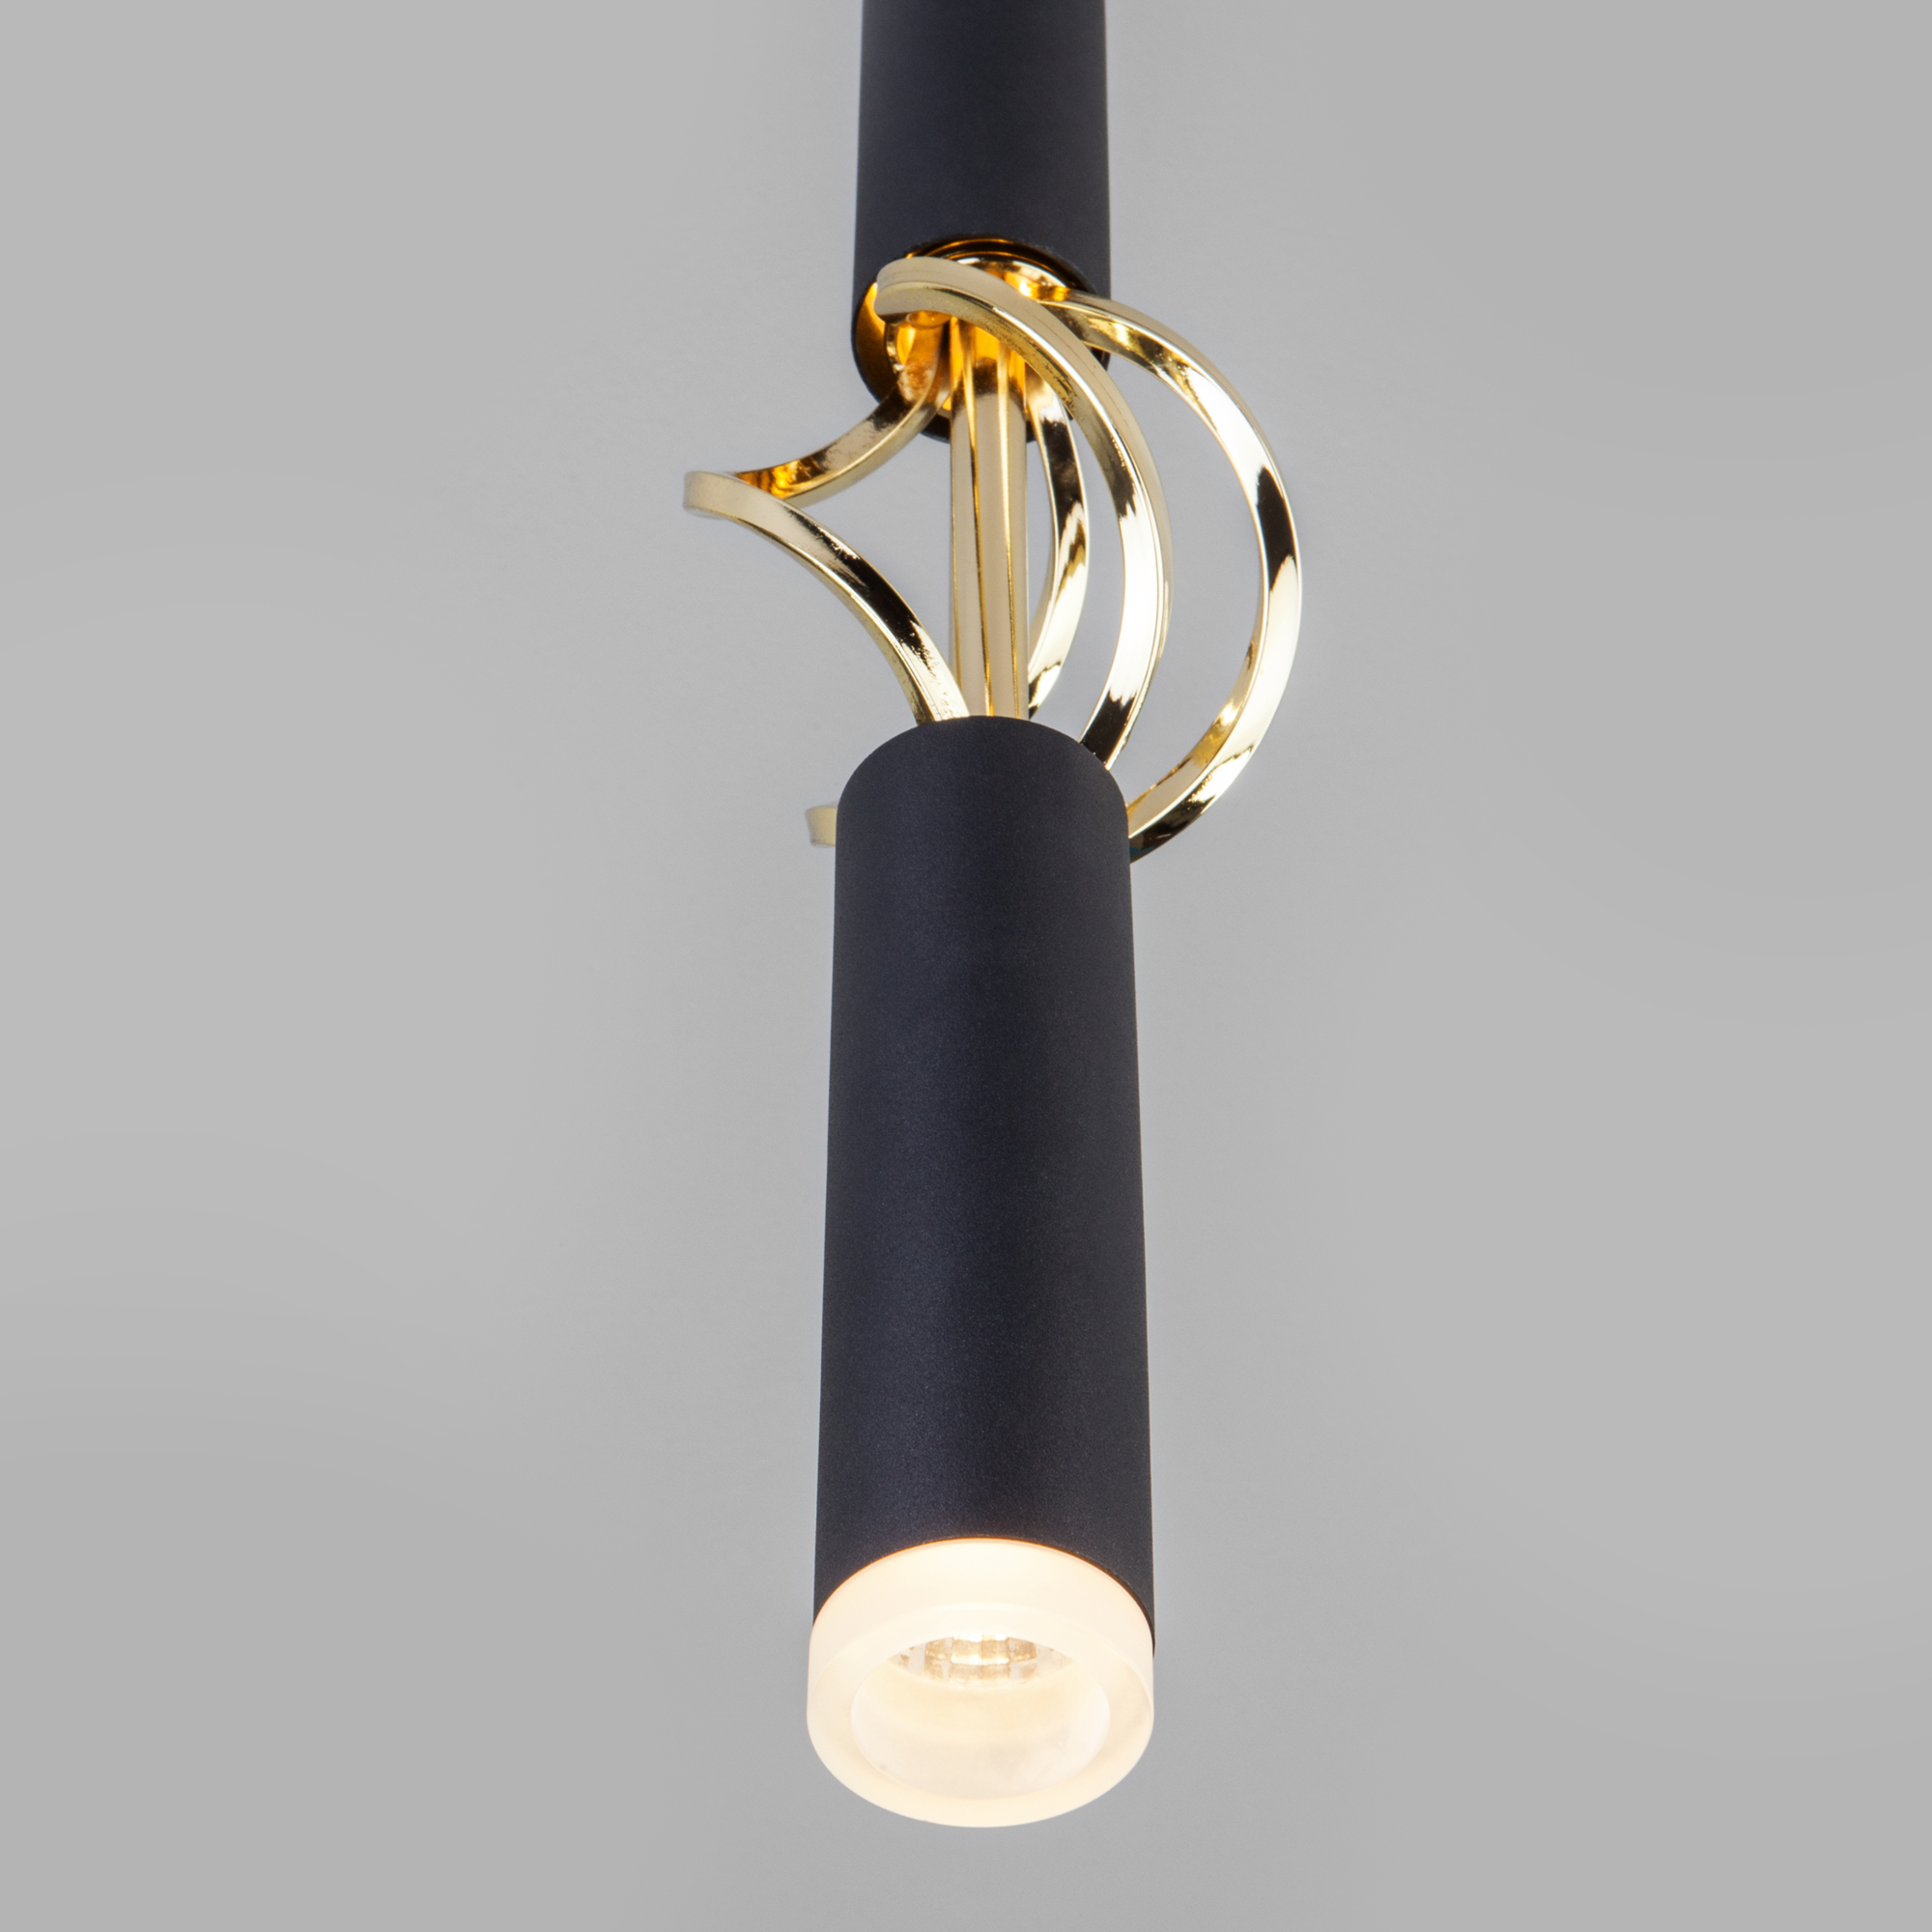 Светильник подвесной Eurosvet Lance 50191/1 LED черный/золото